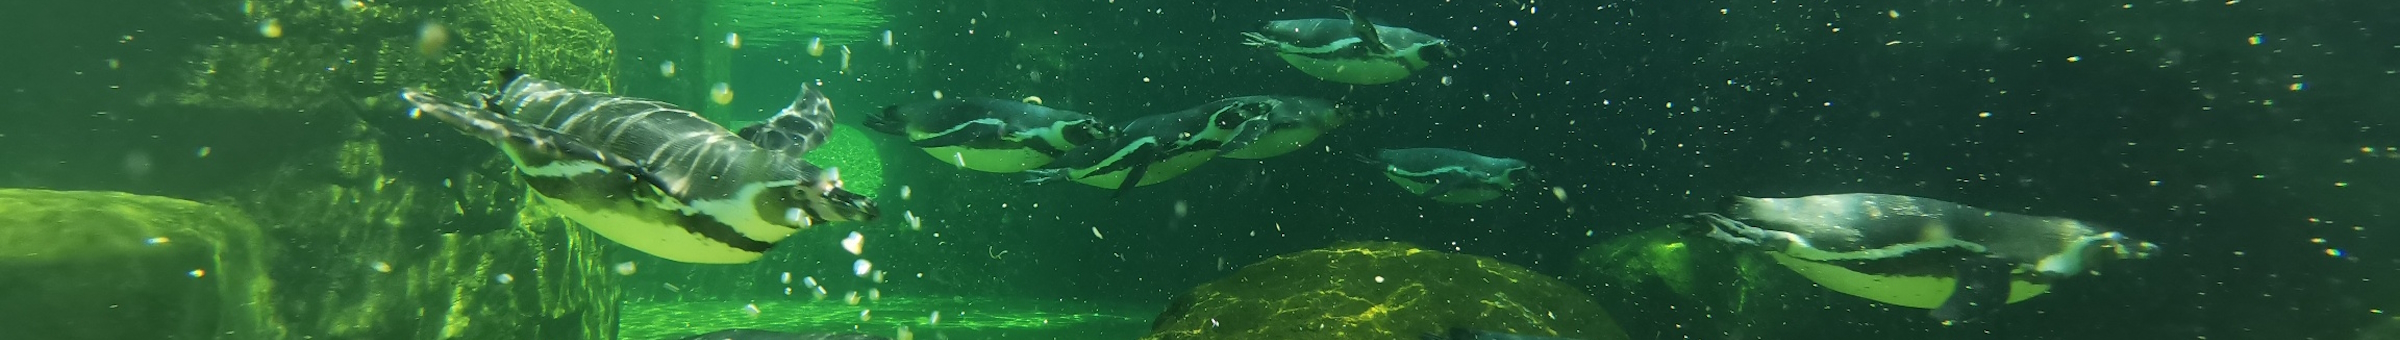 Pinguine schwimmen durch ihr Wasserbecken im Zoo Dresden